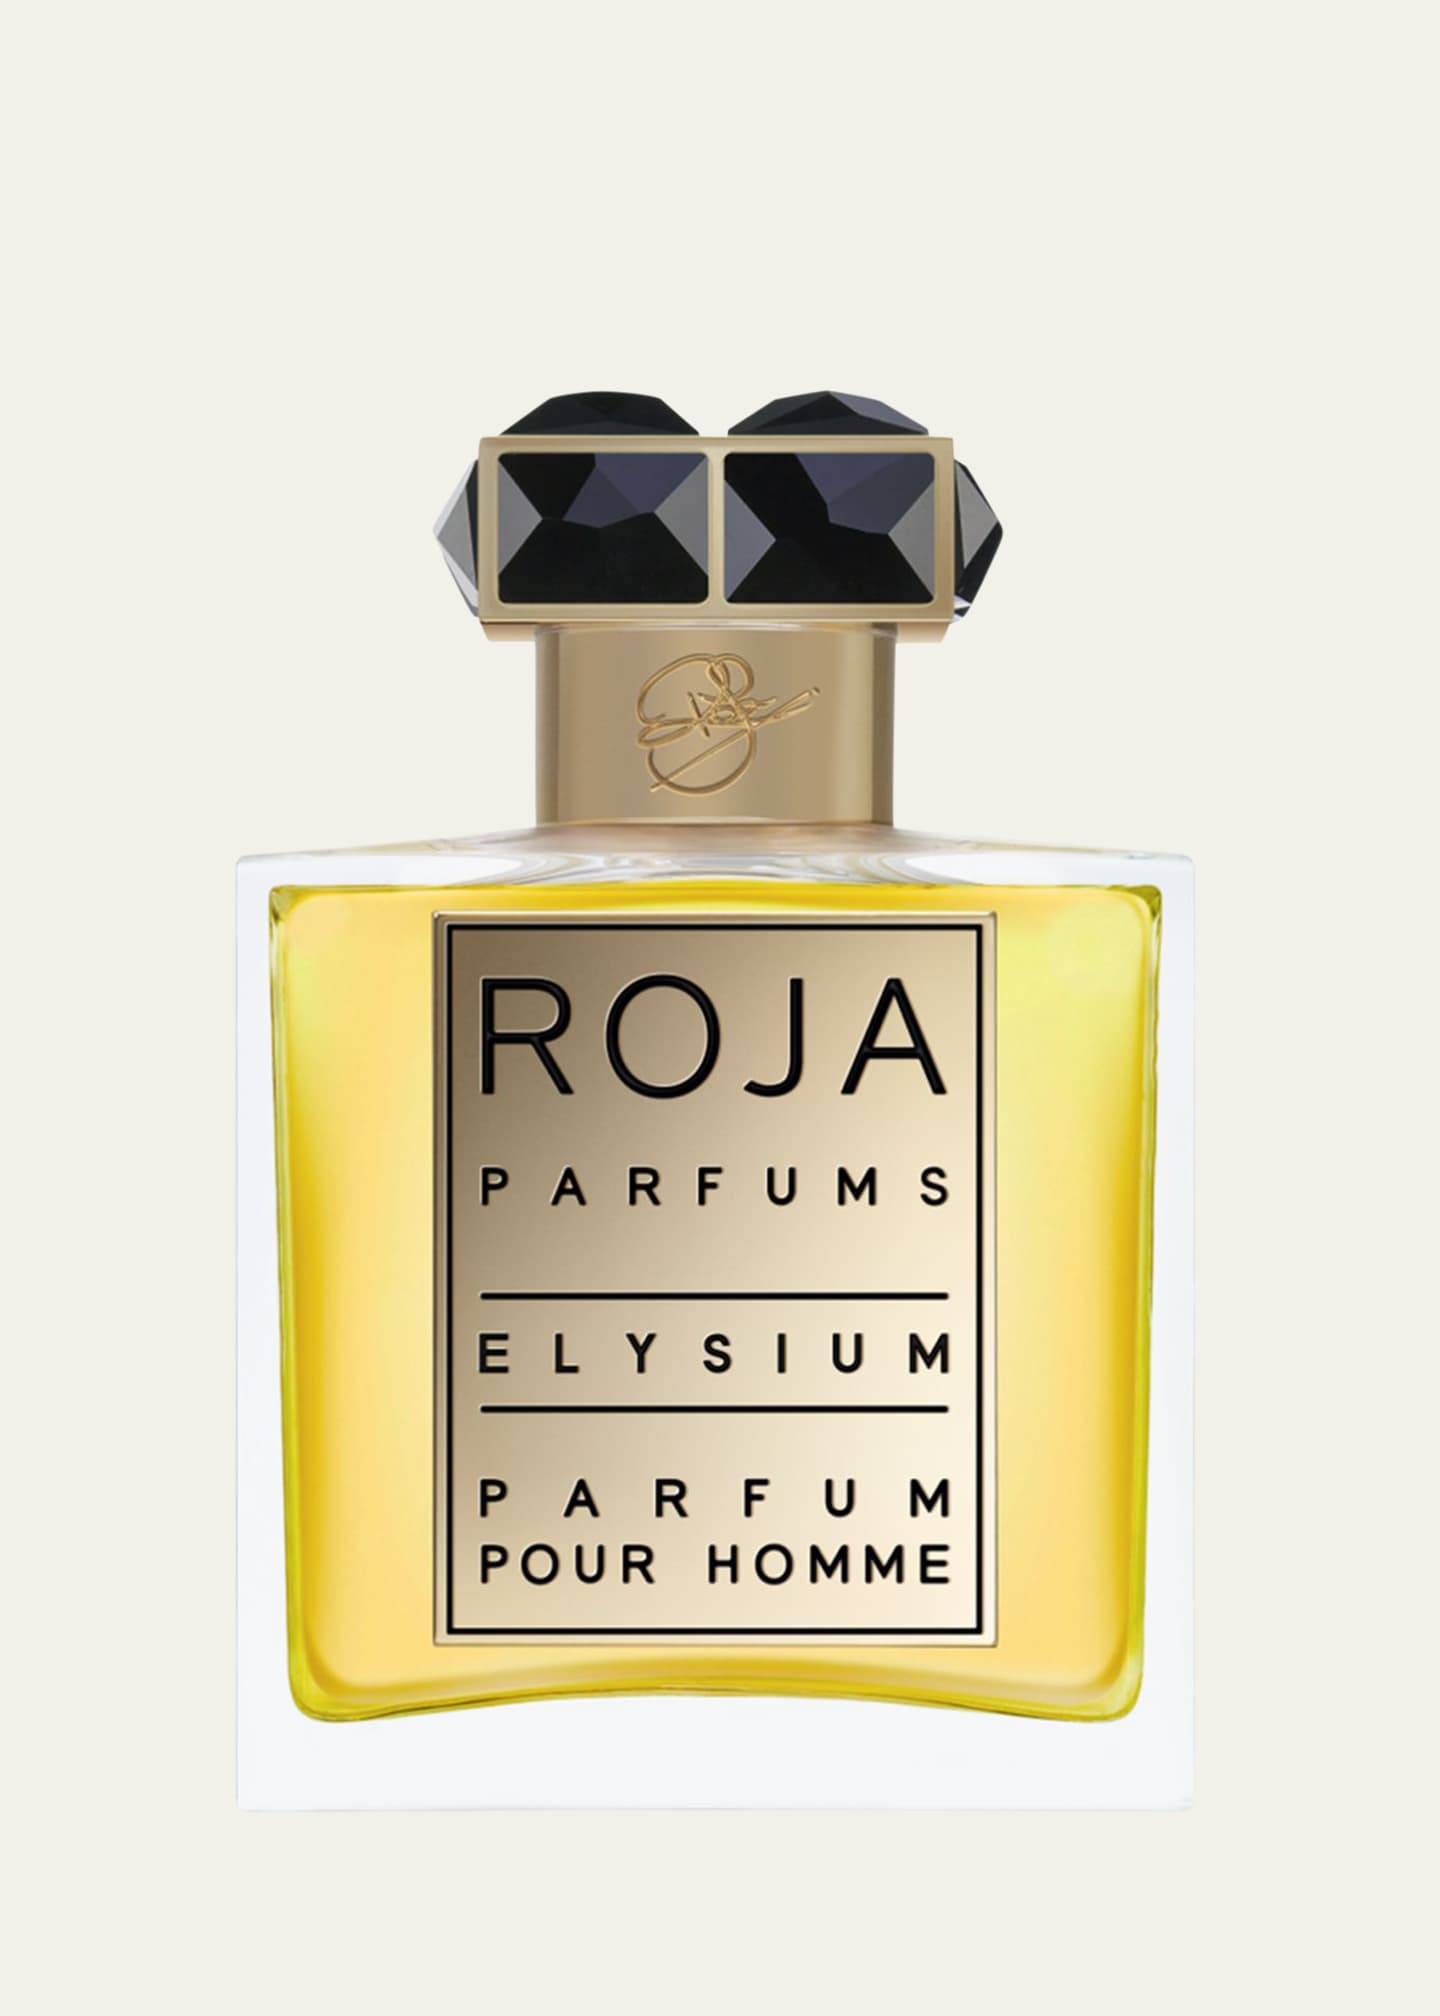 Roja Parfums Elysium Parfum Pour Homme, 1.7 oz. Image 1 of 3